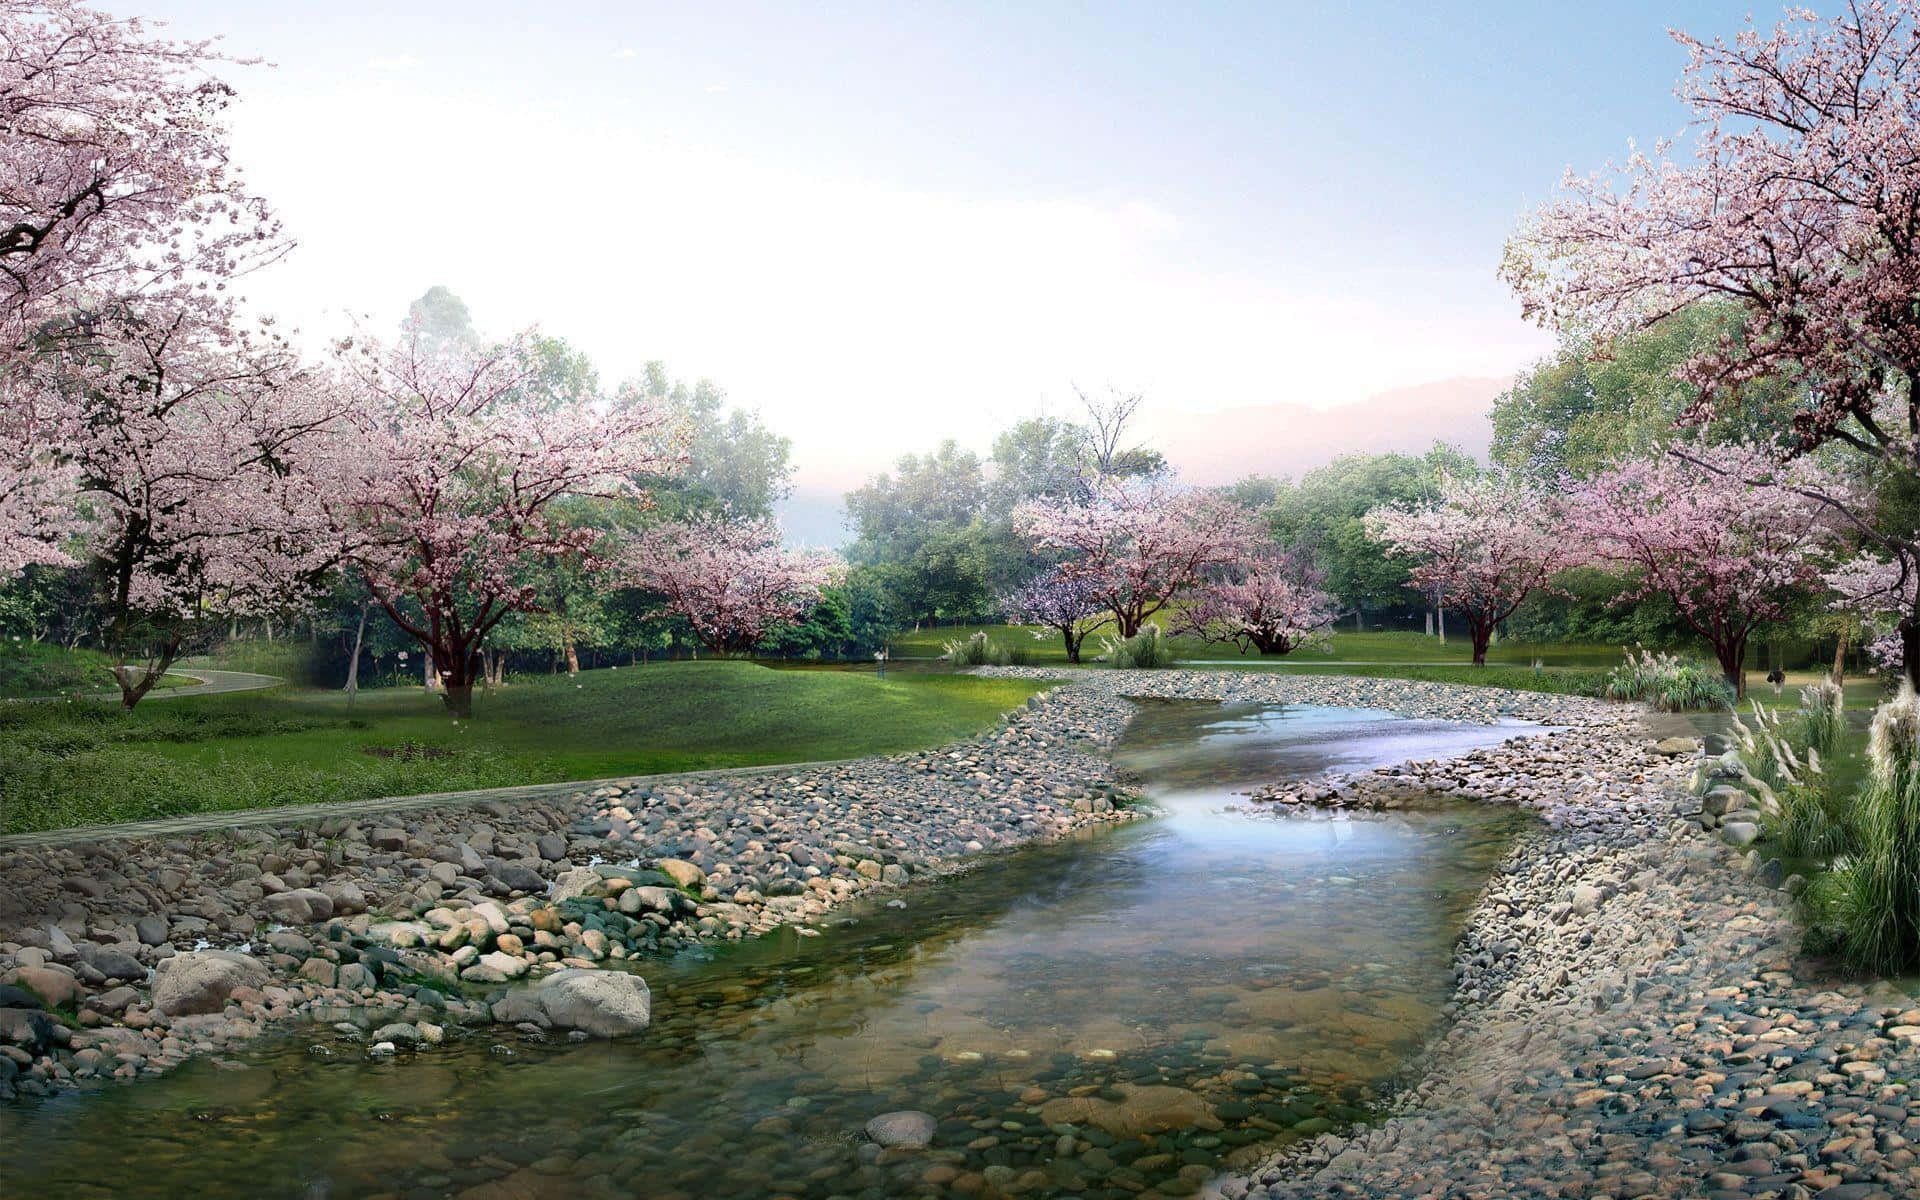 A vibrant sakura tree stands in full bloom in Japan.